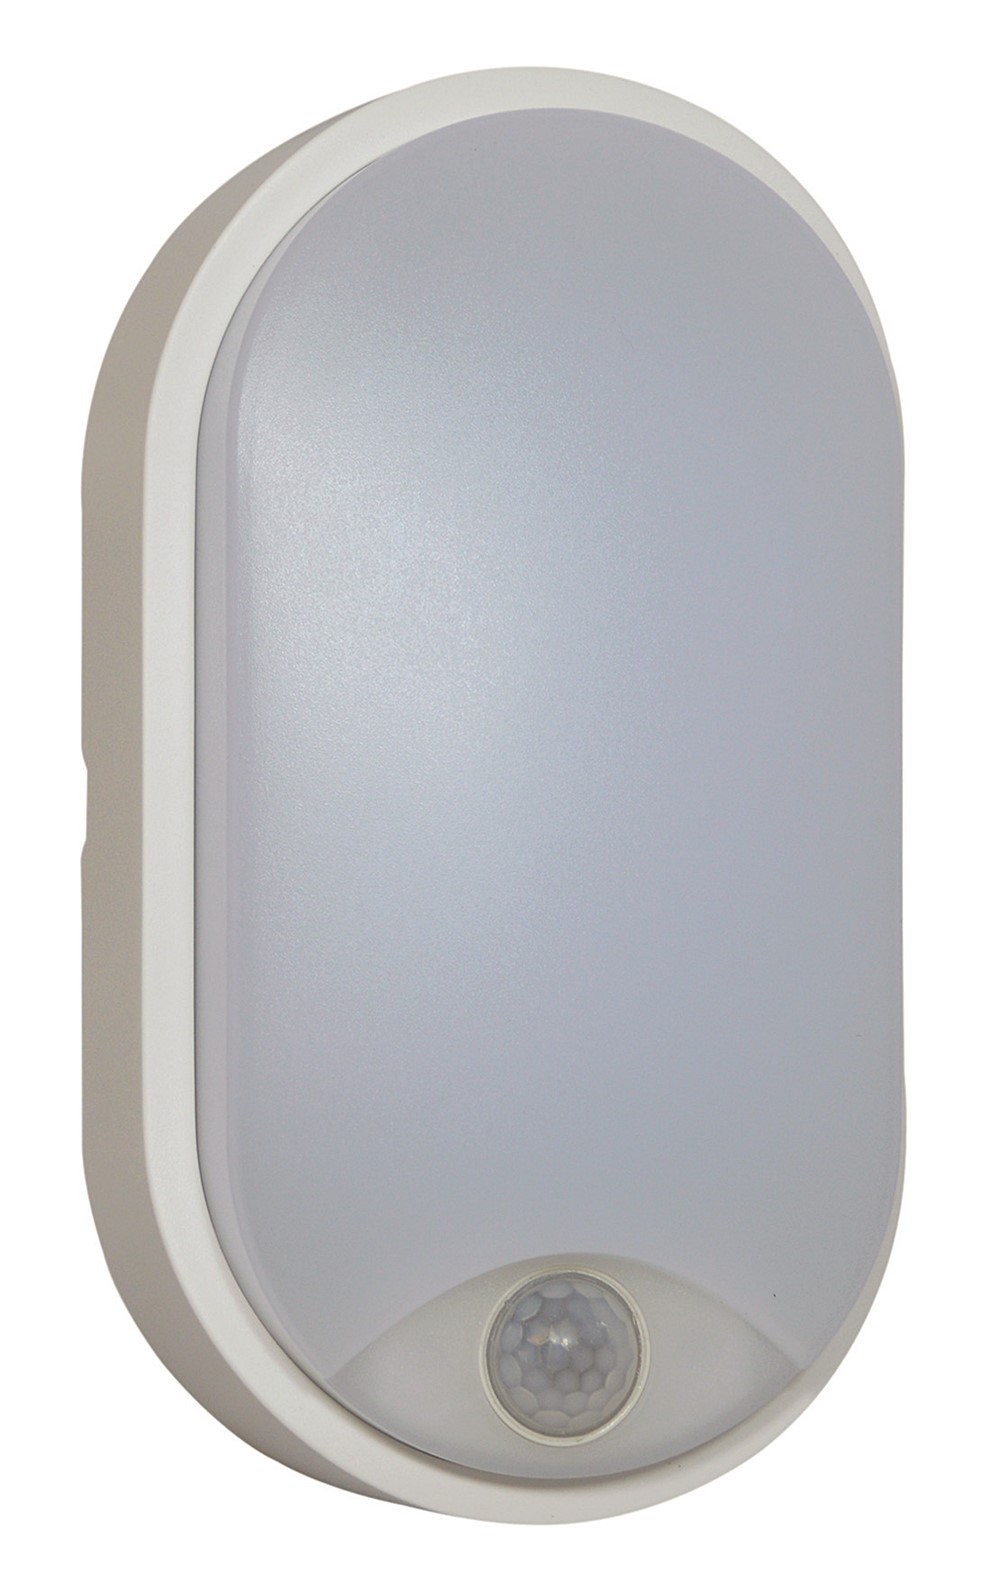 Hublot LED 10W ovale blanc avec détecteur - TIBELEC 